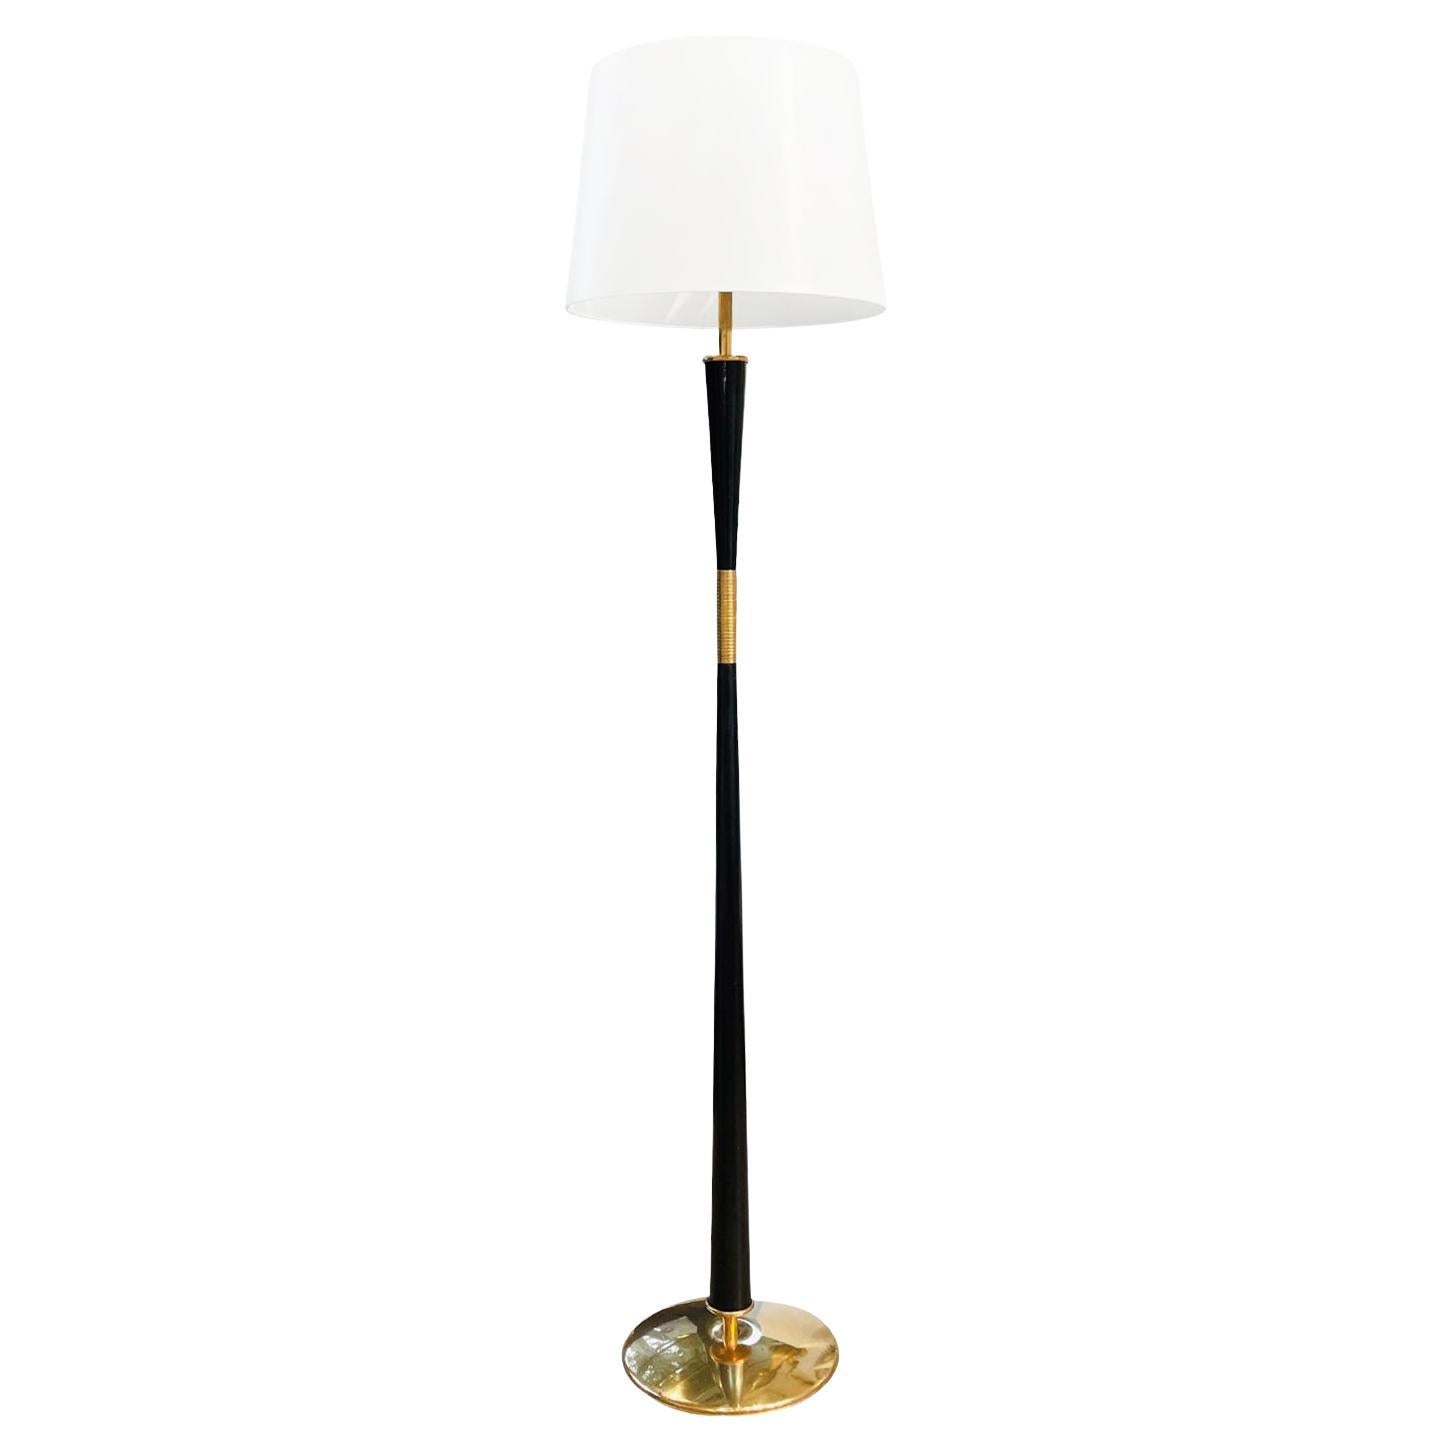 20th Century Italian Mid-Century Modern Iron Floor Lamp - Vintage Brass Light